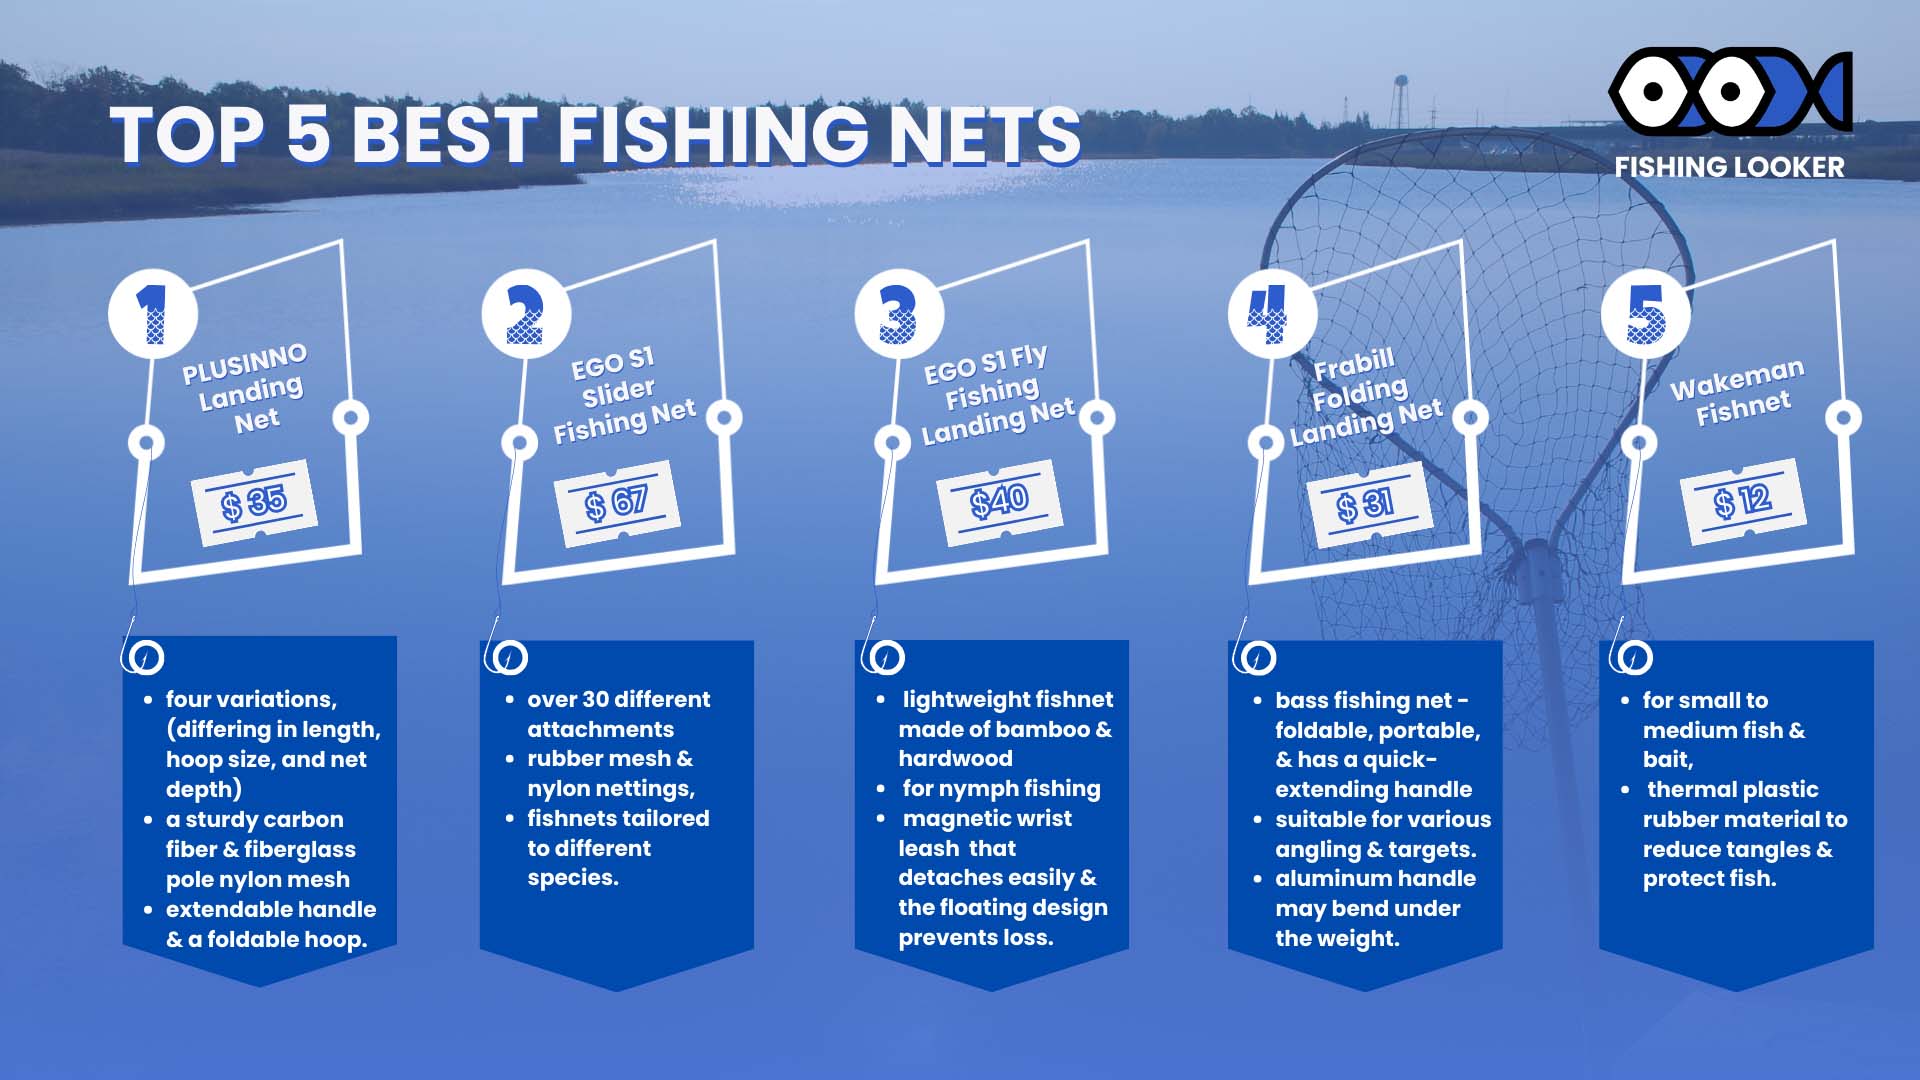 Top 5 Best Fishing Nets